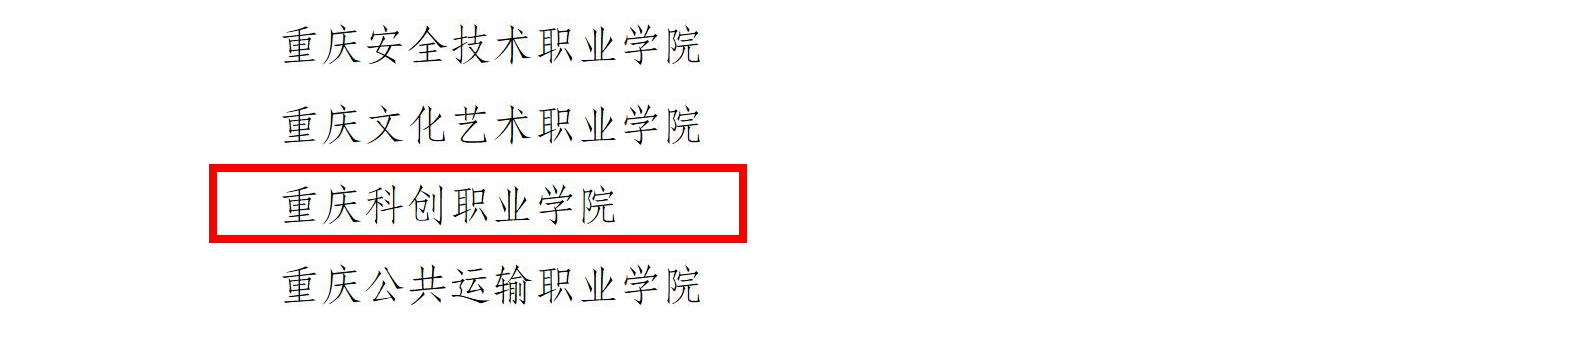 1134重庆市教育委员会__重庆市发展和改革委员会关于公布2022年重庆市绿色学校建设示范学校的通知_04.jpg